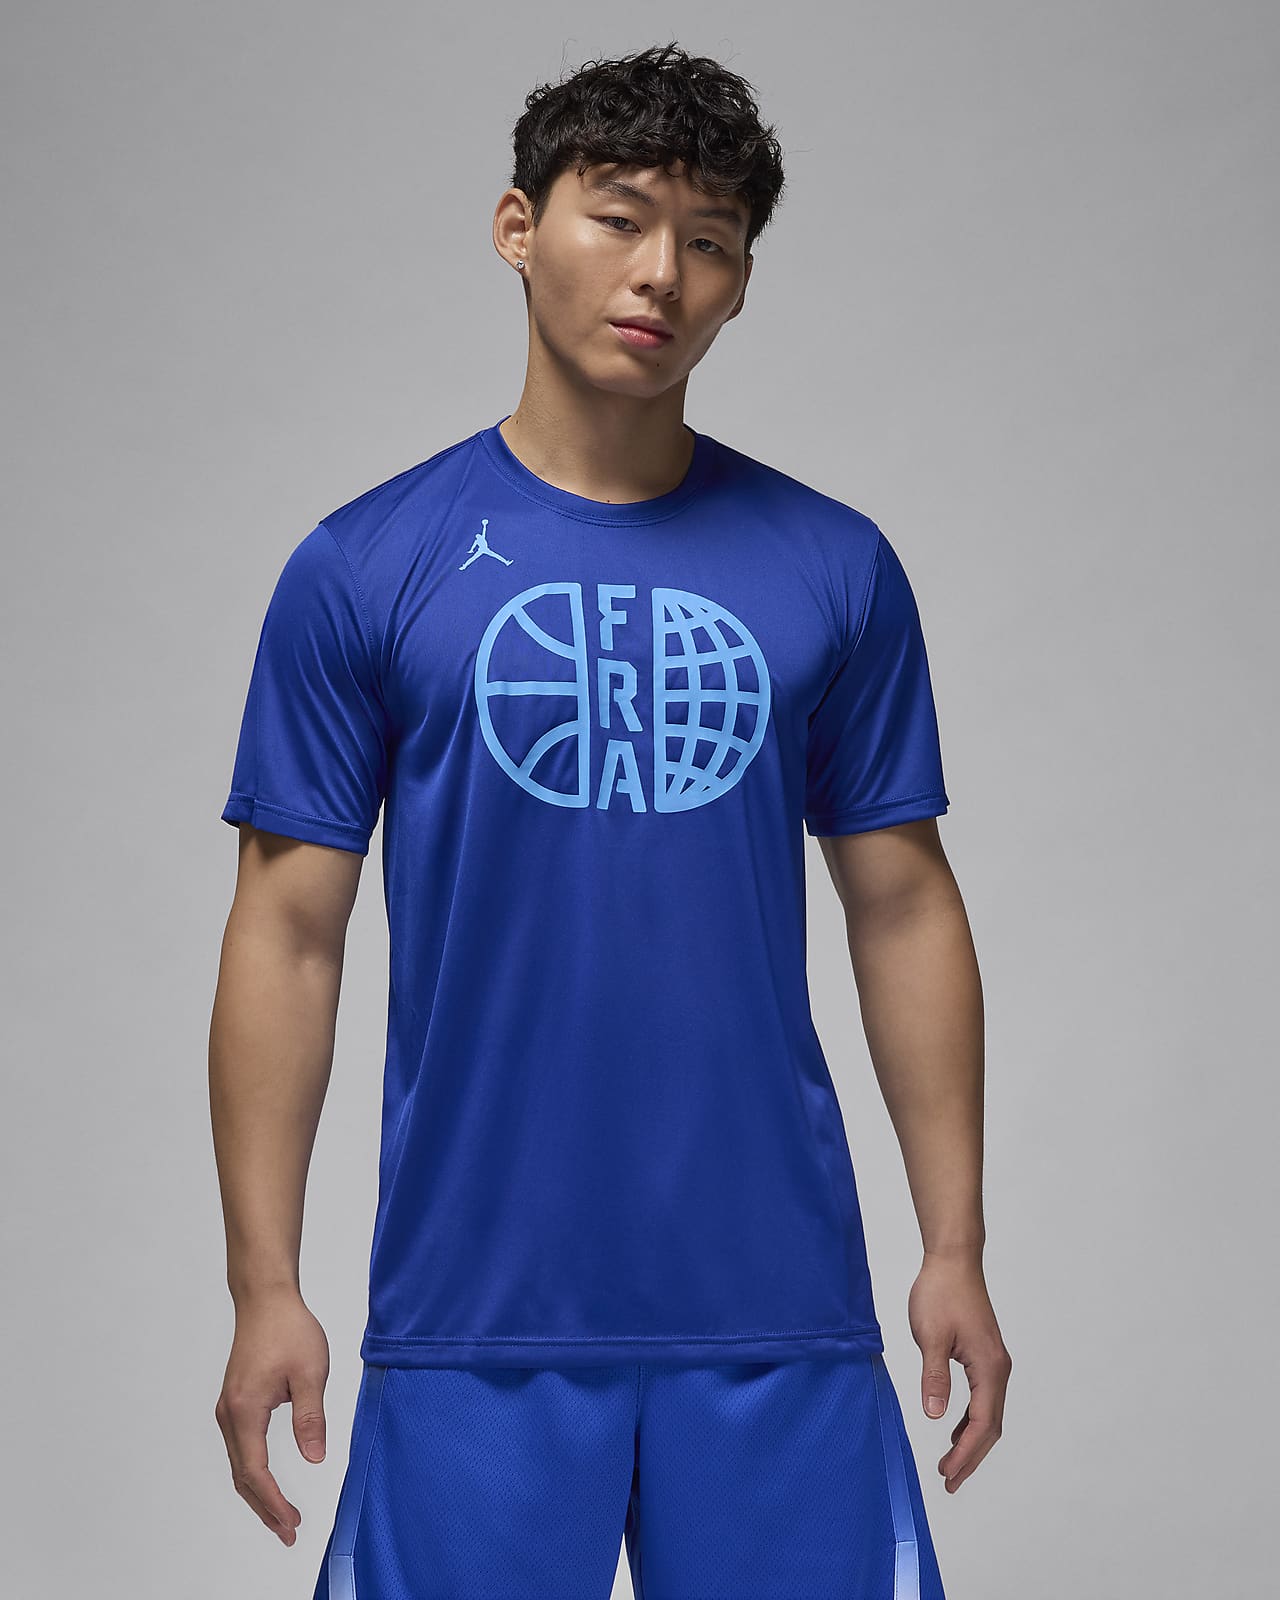 France Training Men's Nike Basketball T-Shirt